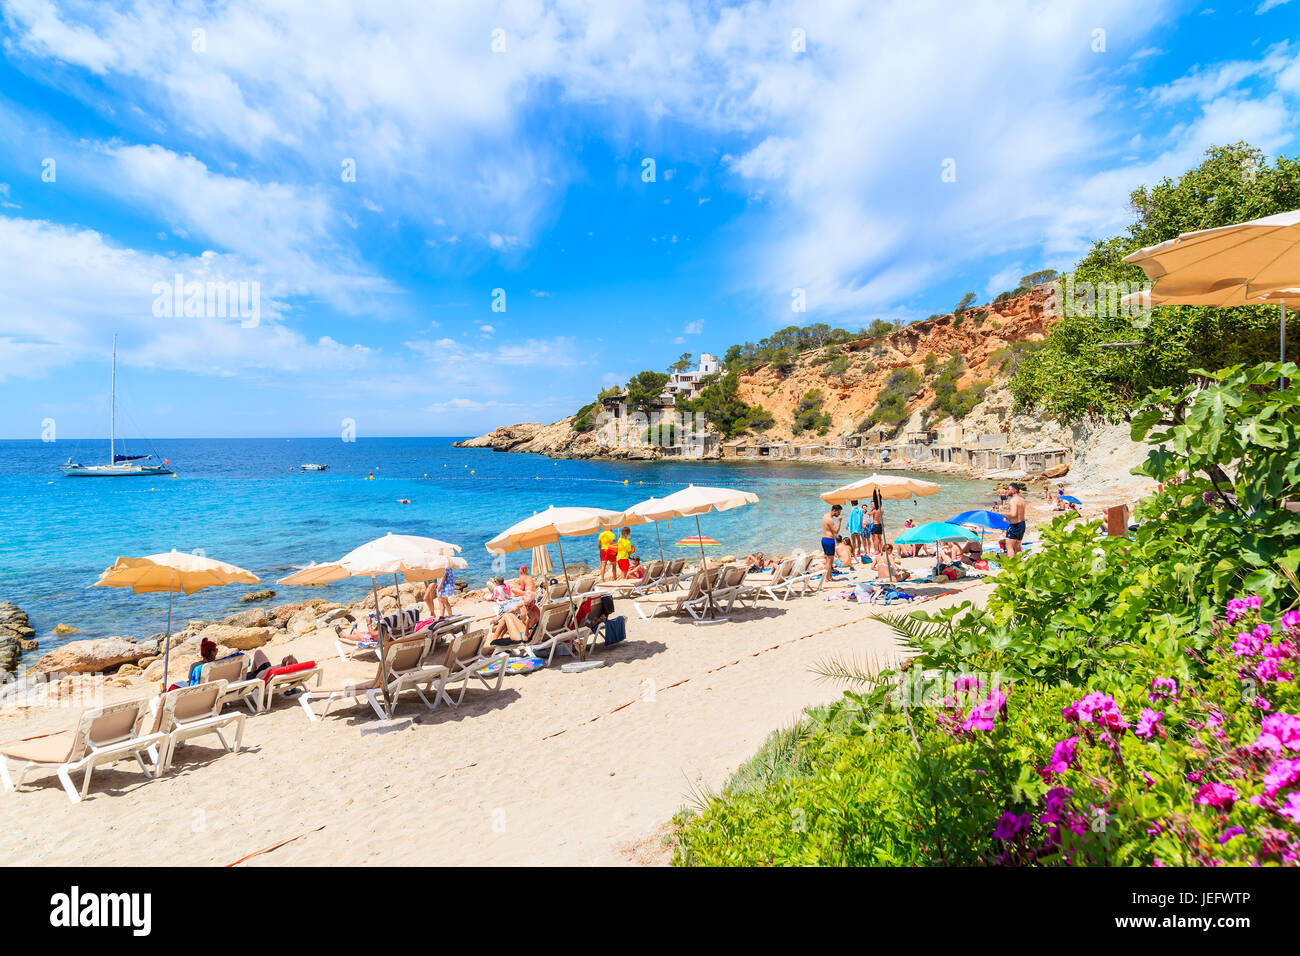 Insel IBIZA, Spanien - 18. Mai 2017: Blick auf den idyllischen Strand von Cala d ' Hort mit bunten Blumen im Vordergrund, Insel Ibiza, Spanien. Stockfoto